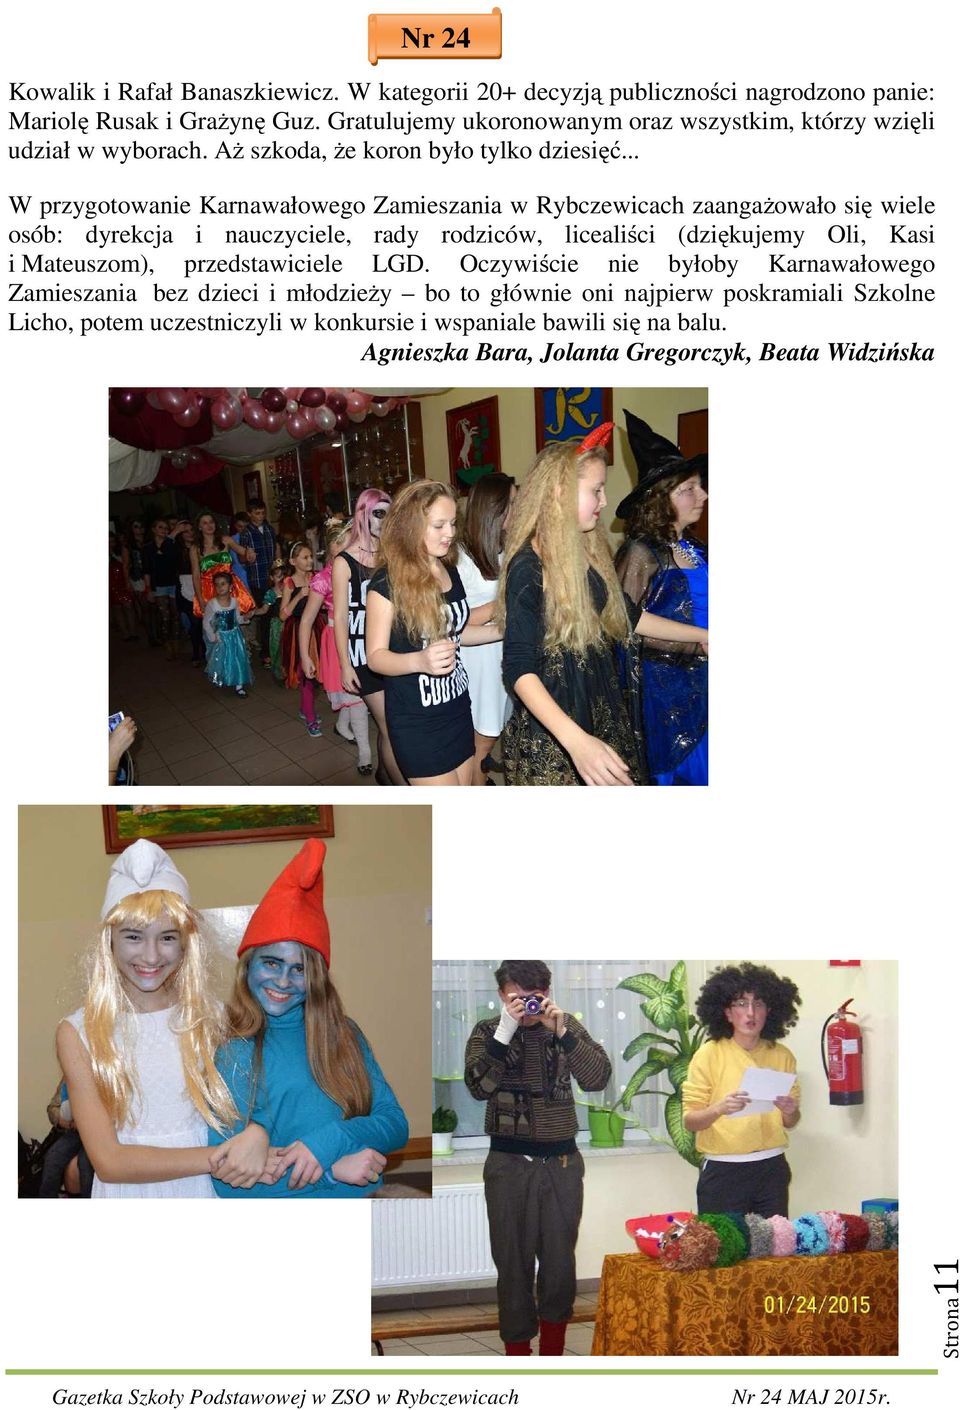 .. W przygotowanie Karnawałowego Zamieszania w Rybczewicach zaangażowało się wiele osób: dyrekcja i nauczyciele, rady rodziców, licealiści (dziękujemy Oli, Kasi i